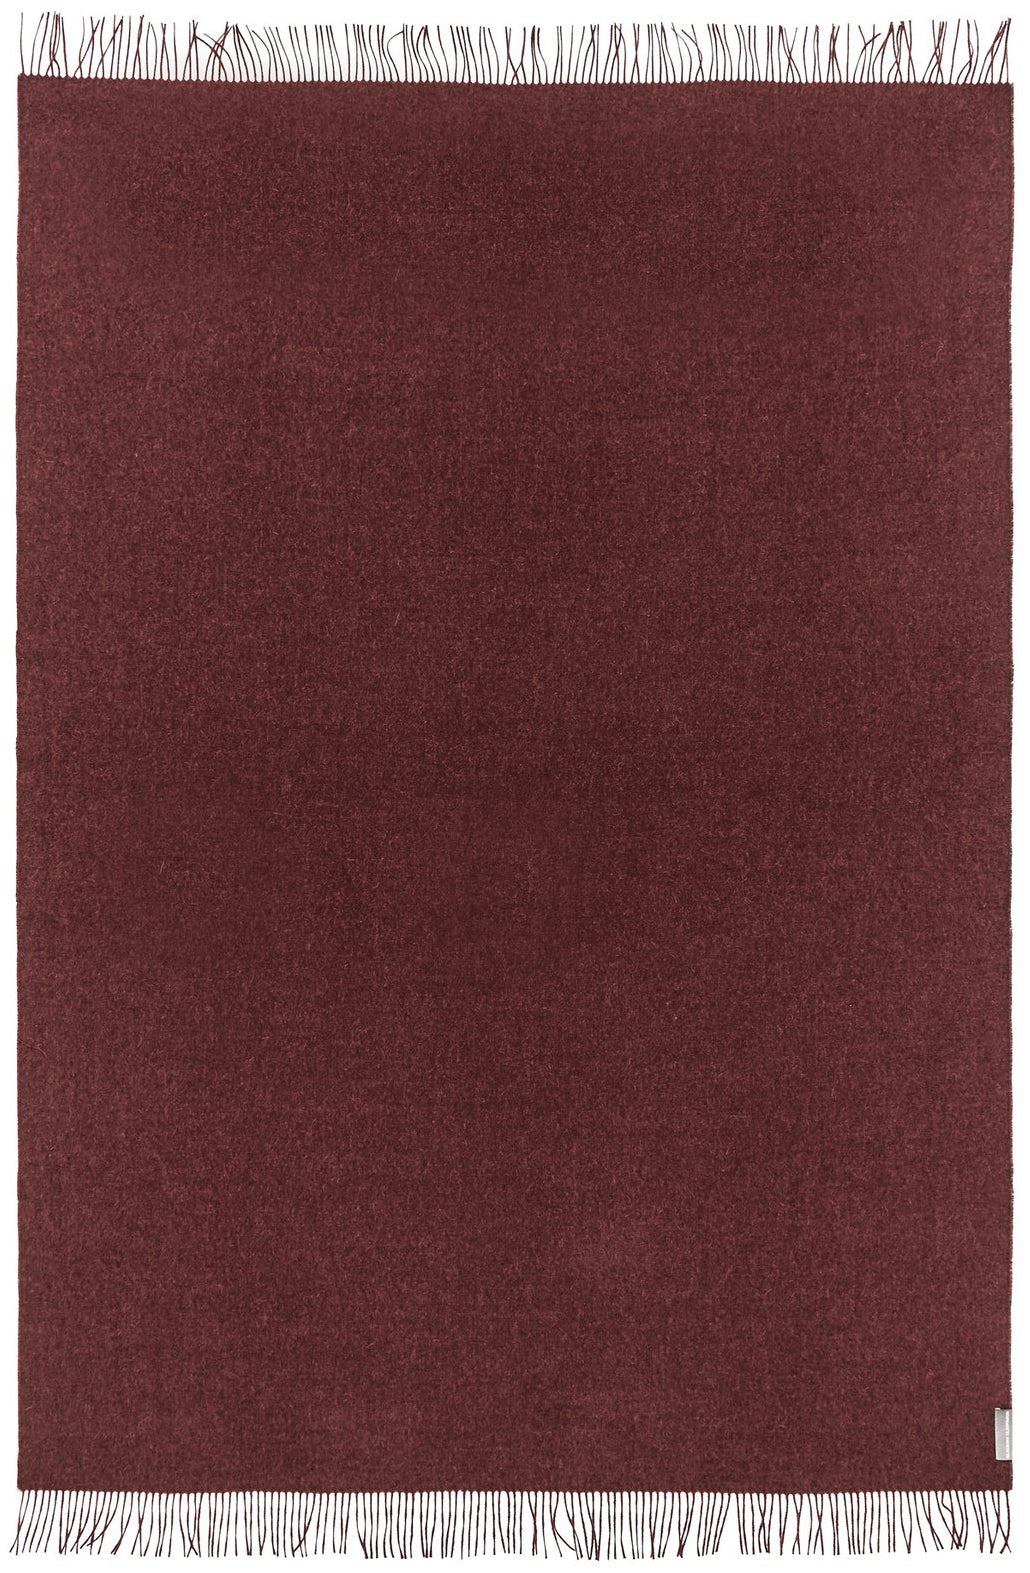 Soft Alpaca Wool Throw Blanket Bordeaux Red